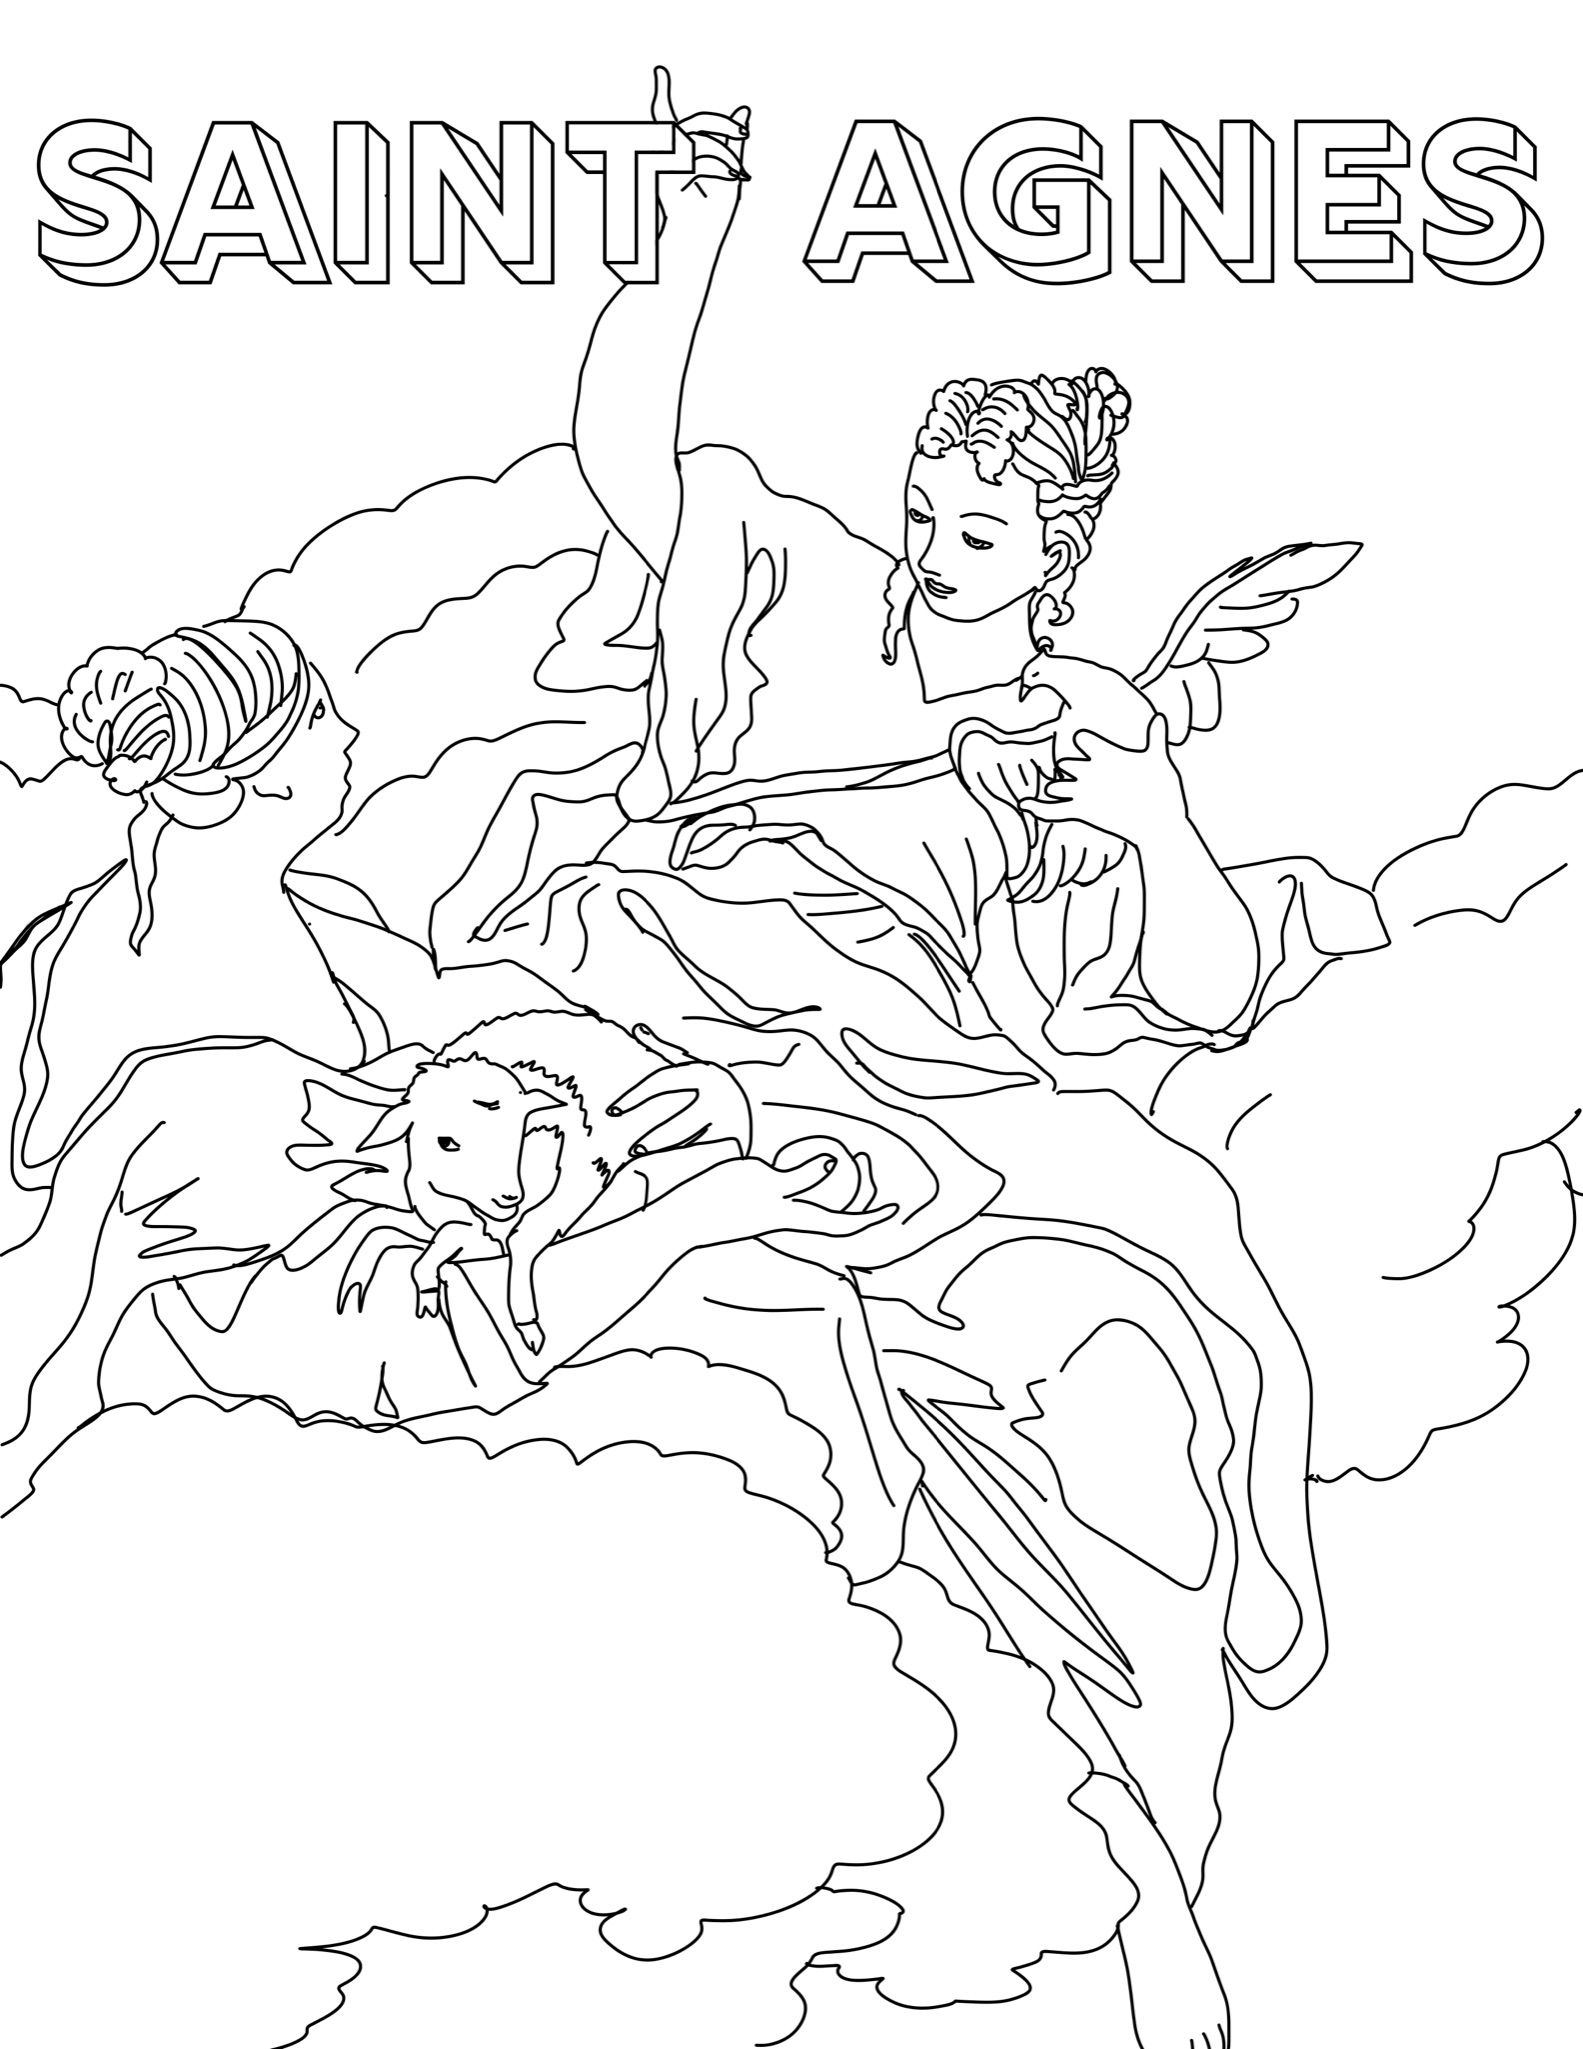 Saint Agnes - Catholic Coloring Page